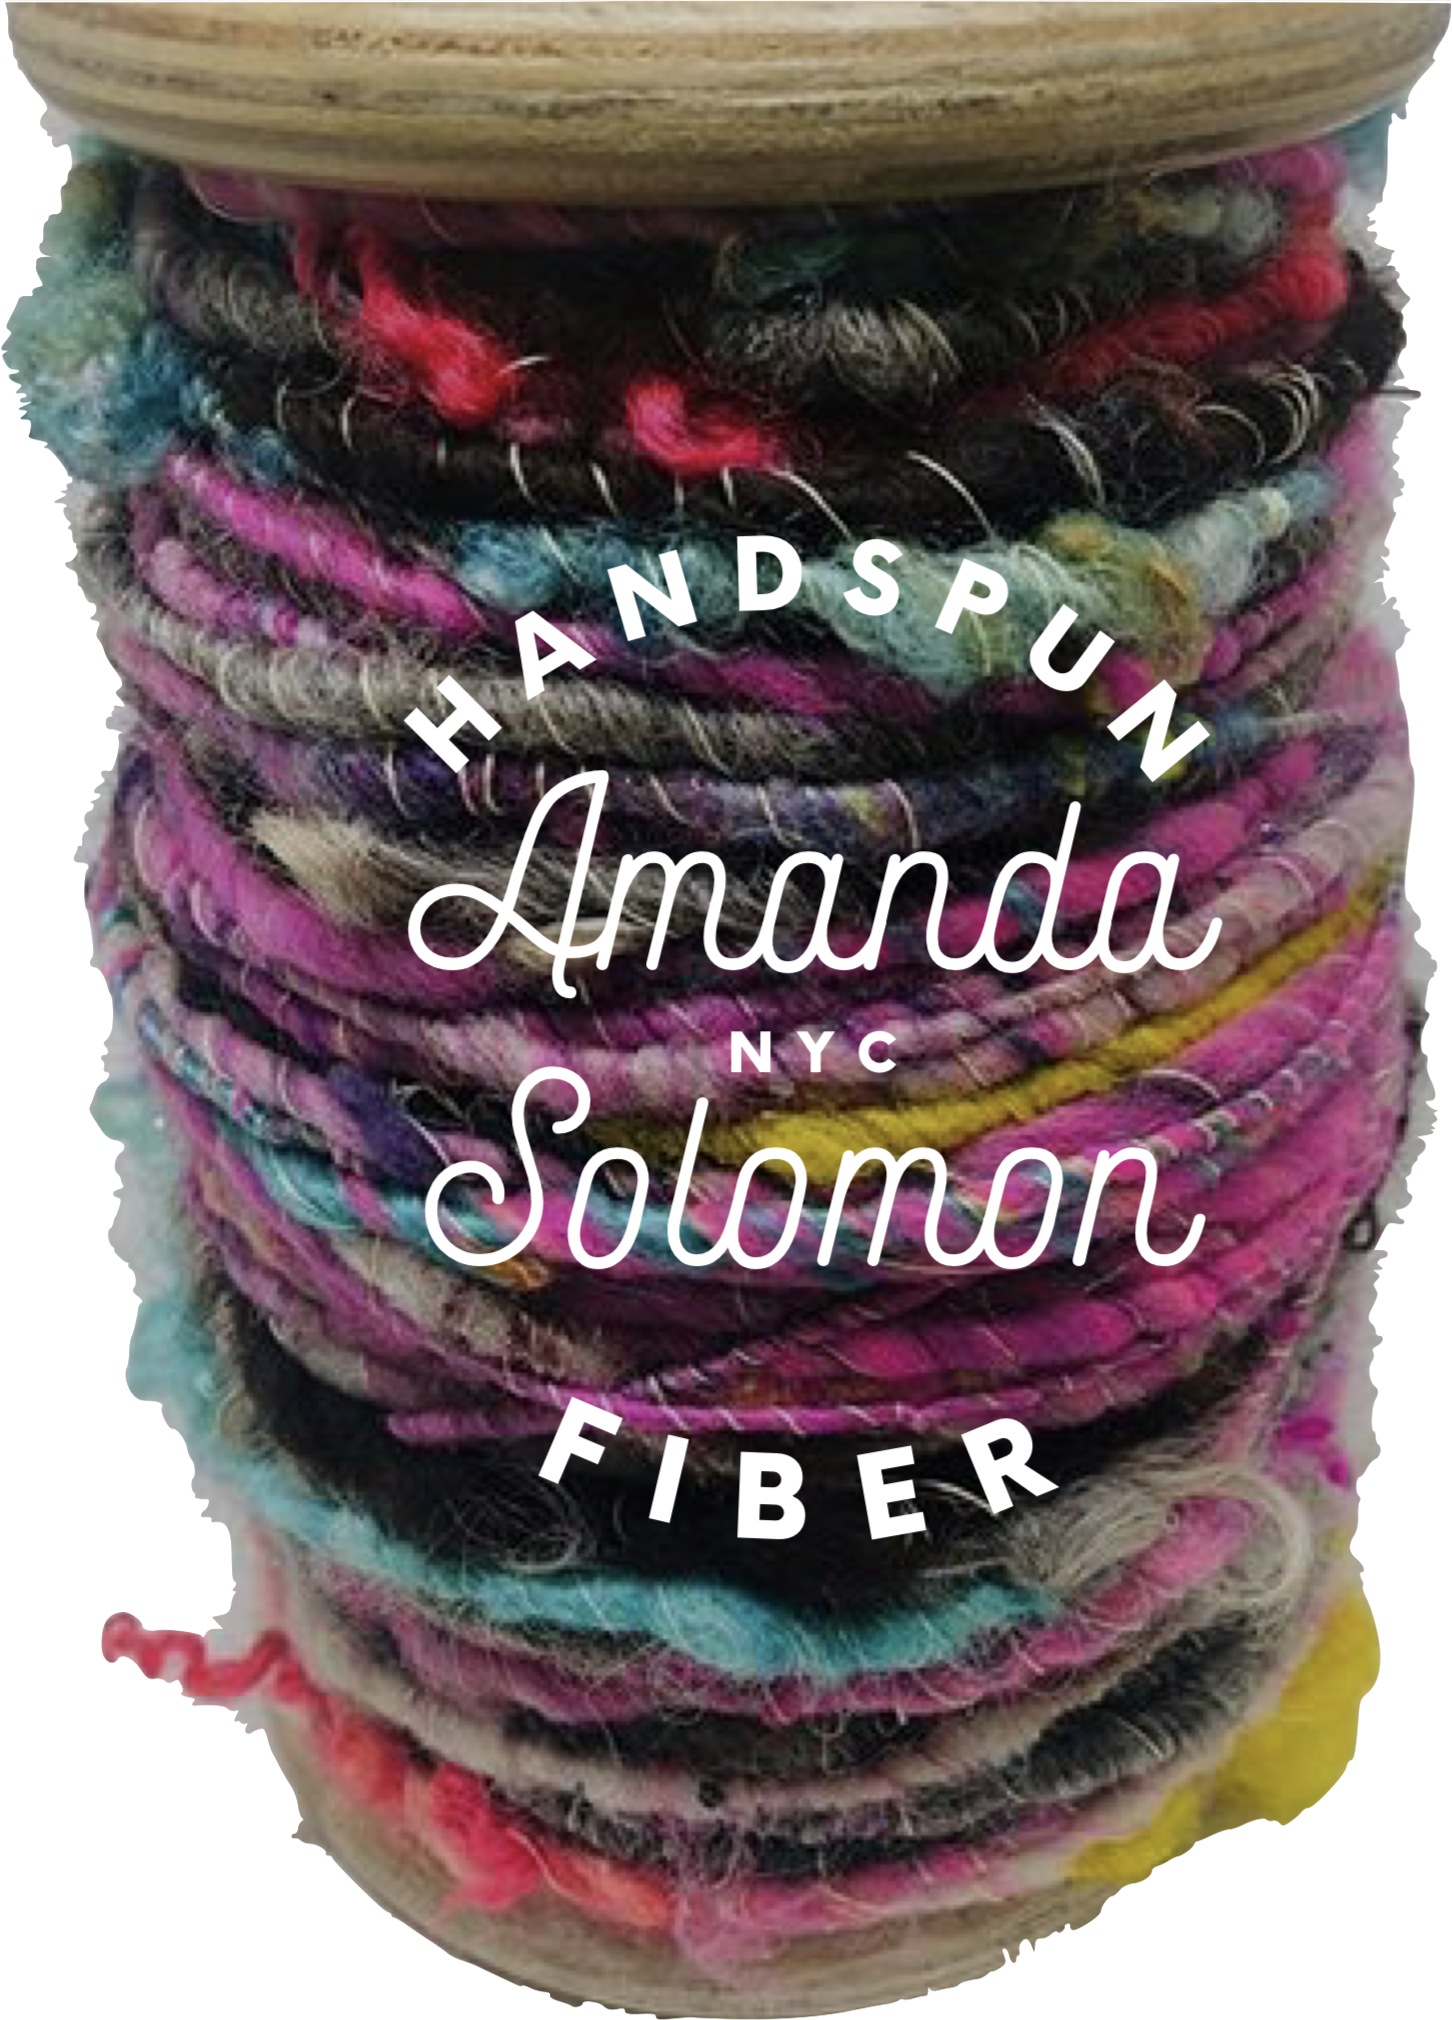 Amanda-Solomon -1.png